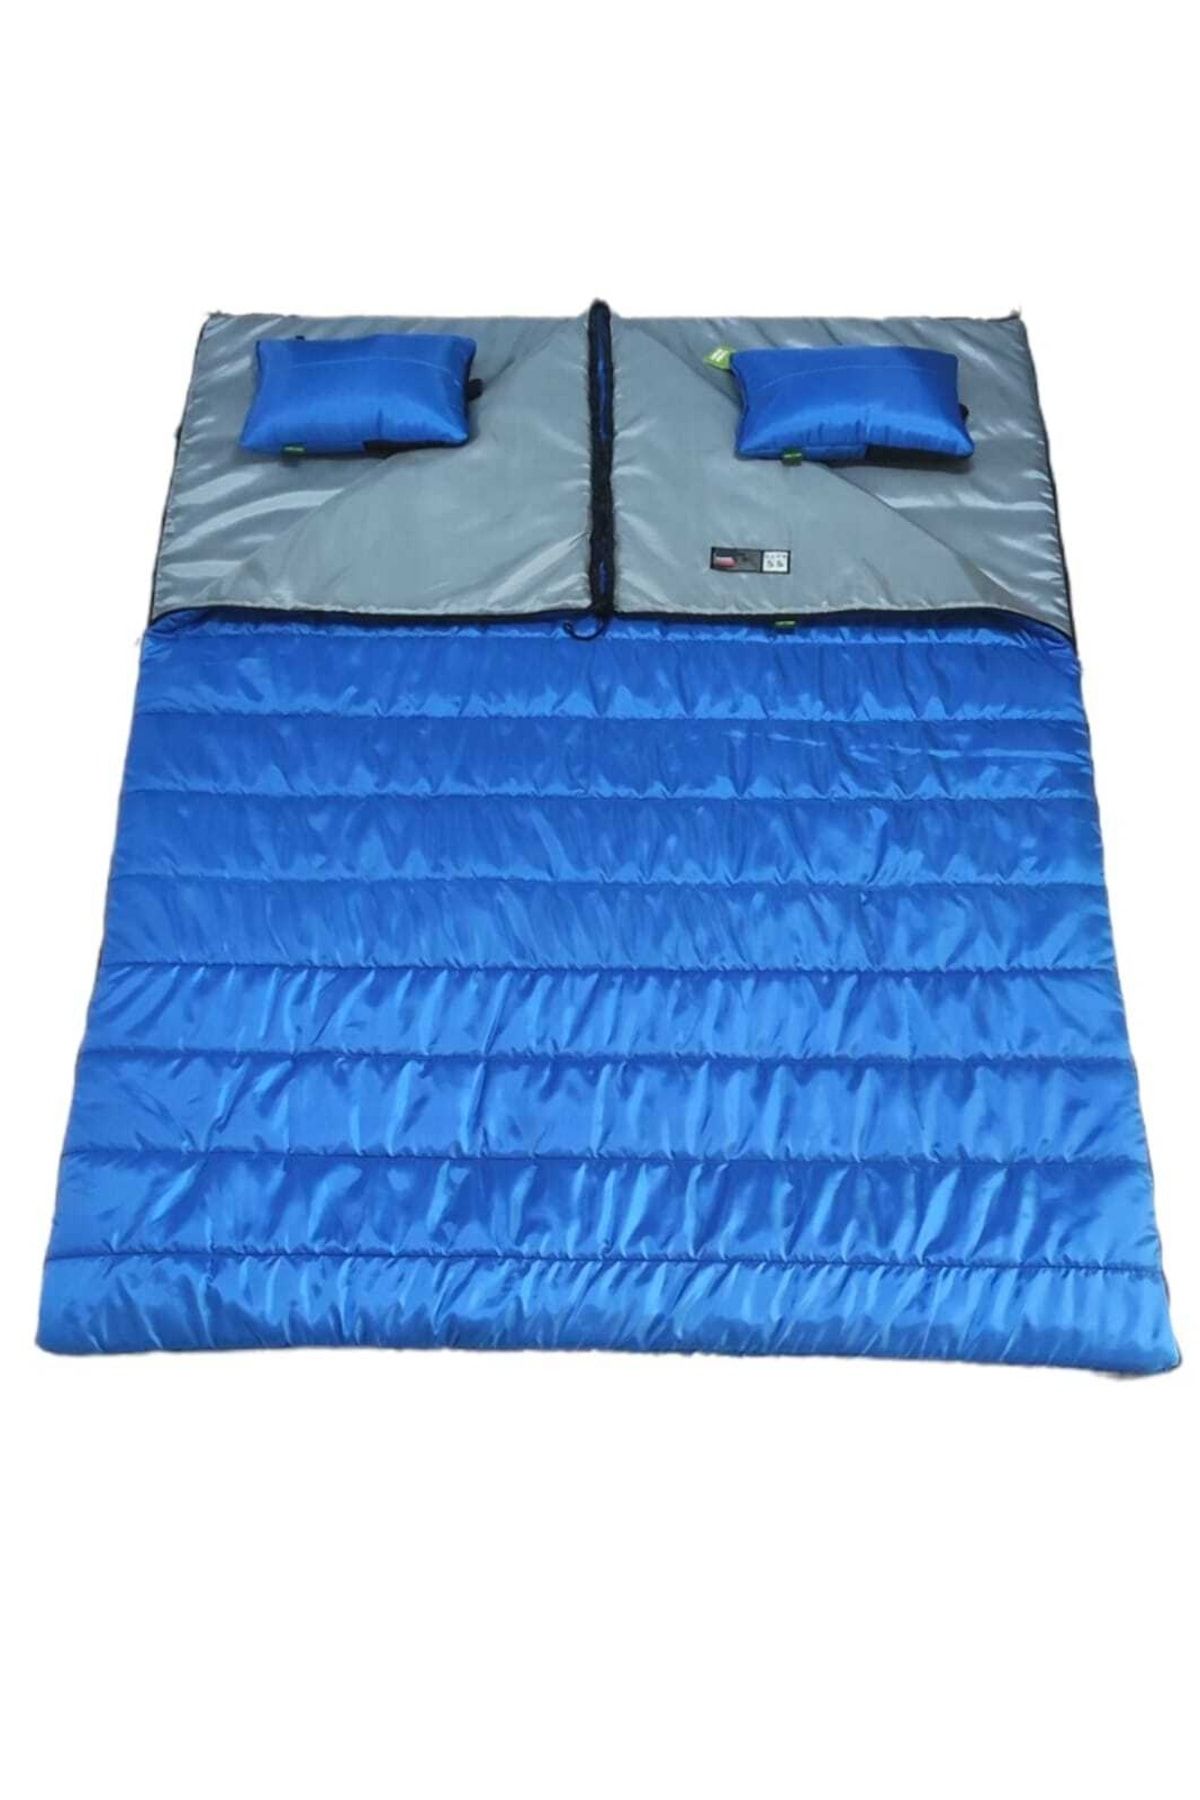 Genel Markalar Masiv-8 200 Gr Yastıklı Çift Kişilik Çift Fermuarlı Uyku Tulumu Mavi